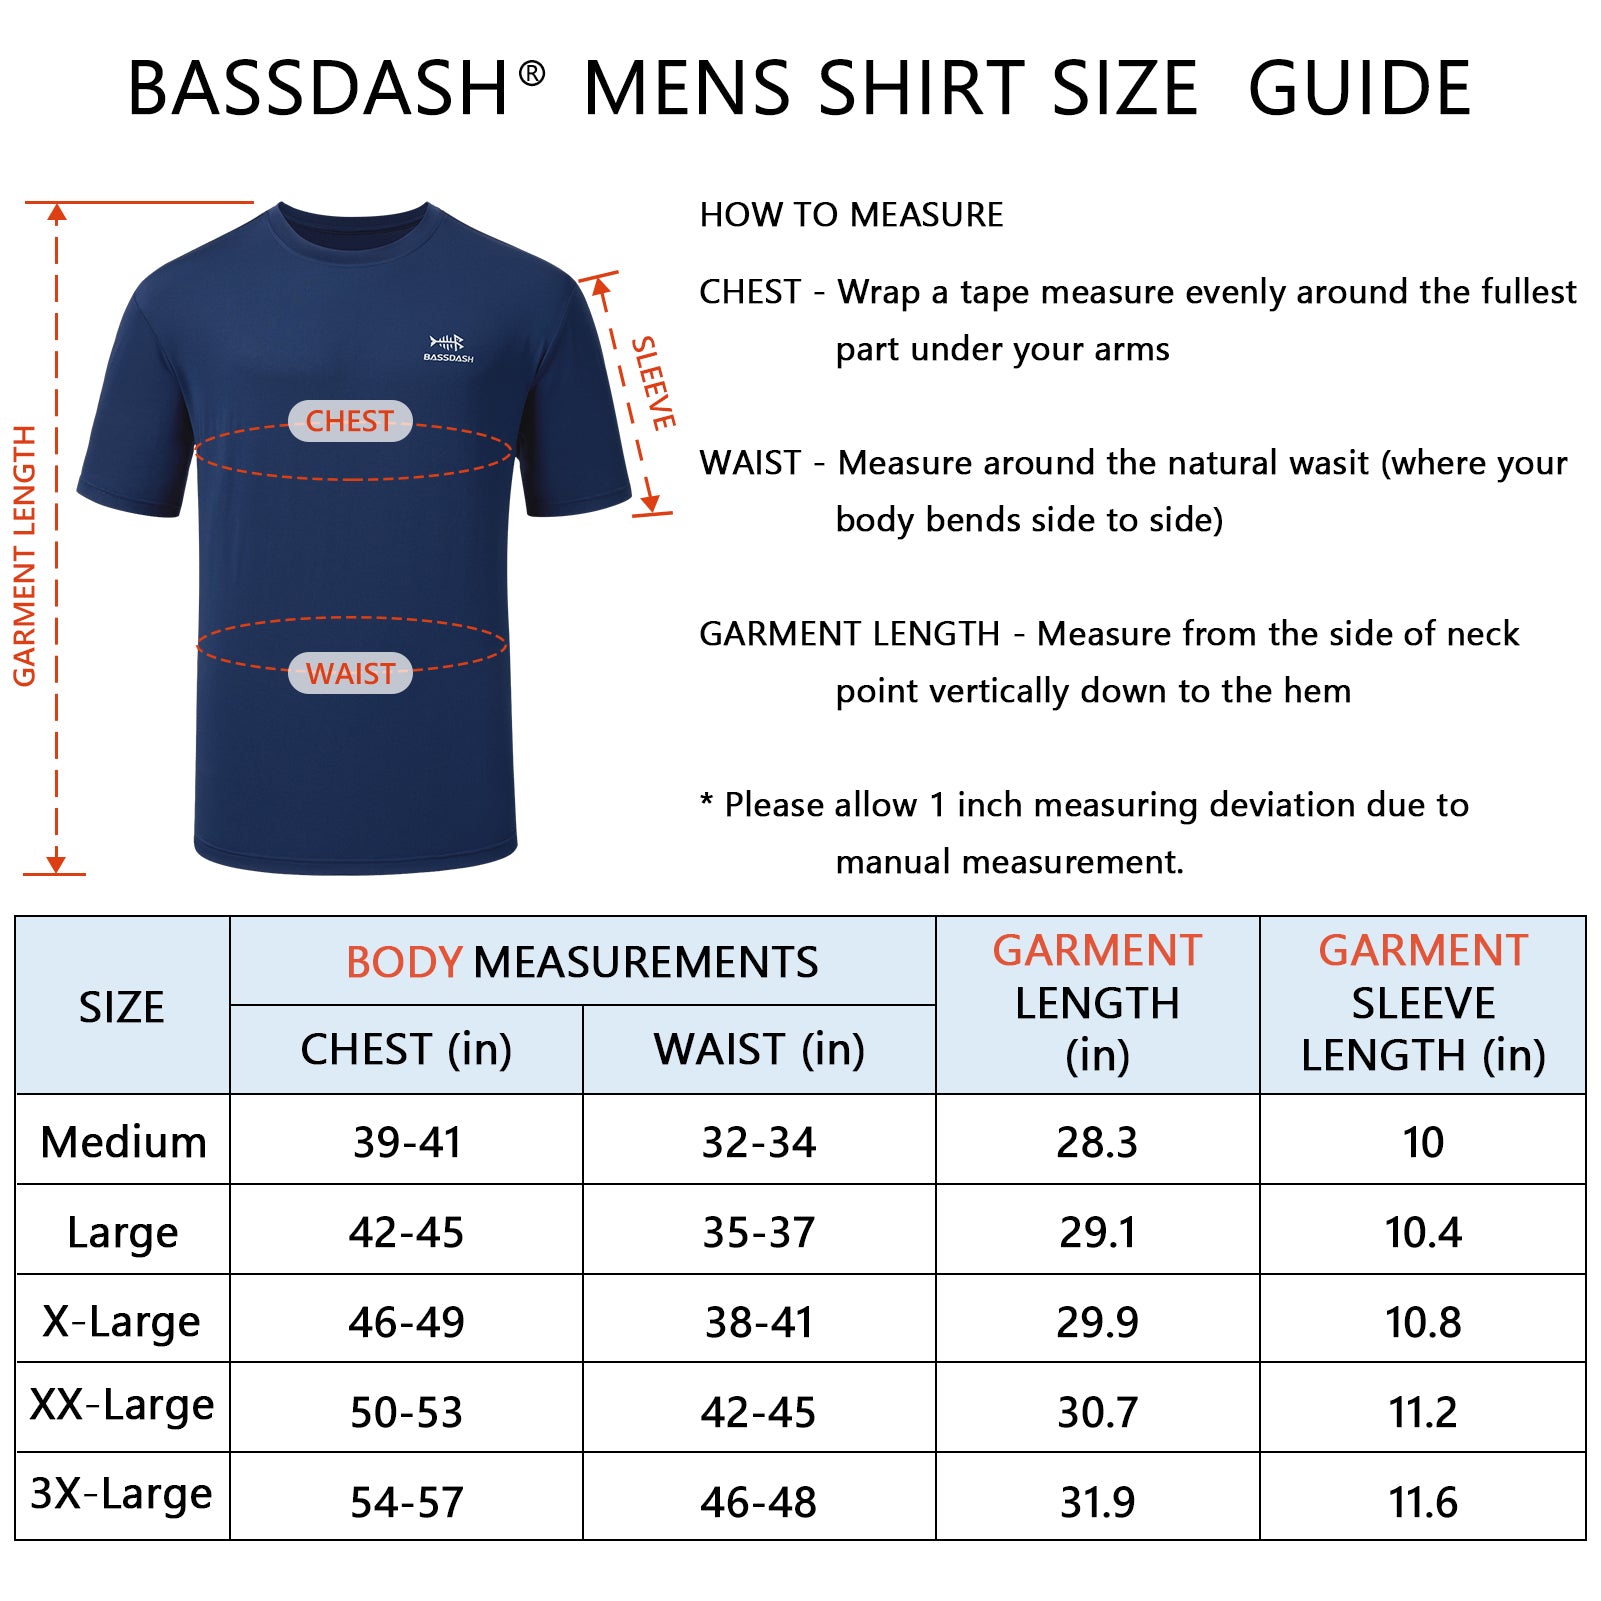 Men's UPF 50+ Short Sleeve T-Shirts FS27M, Dark Blue / Medium